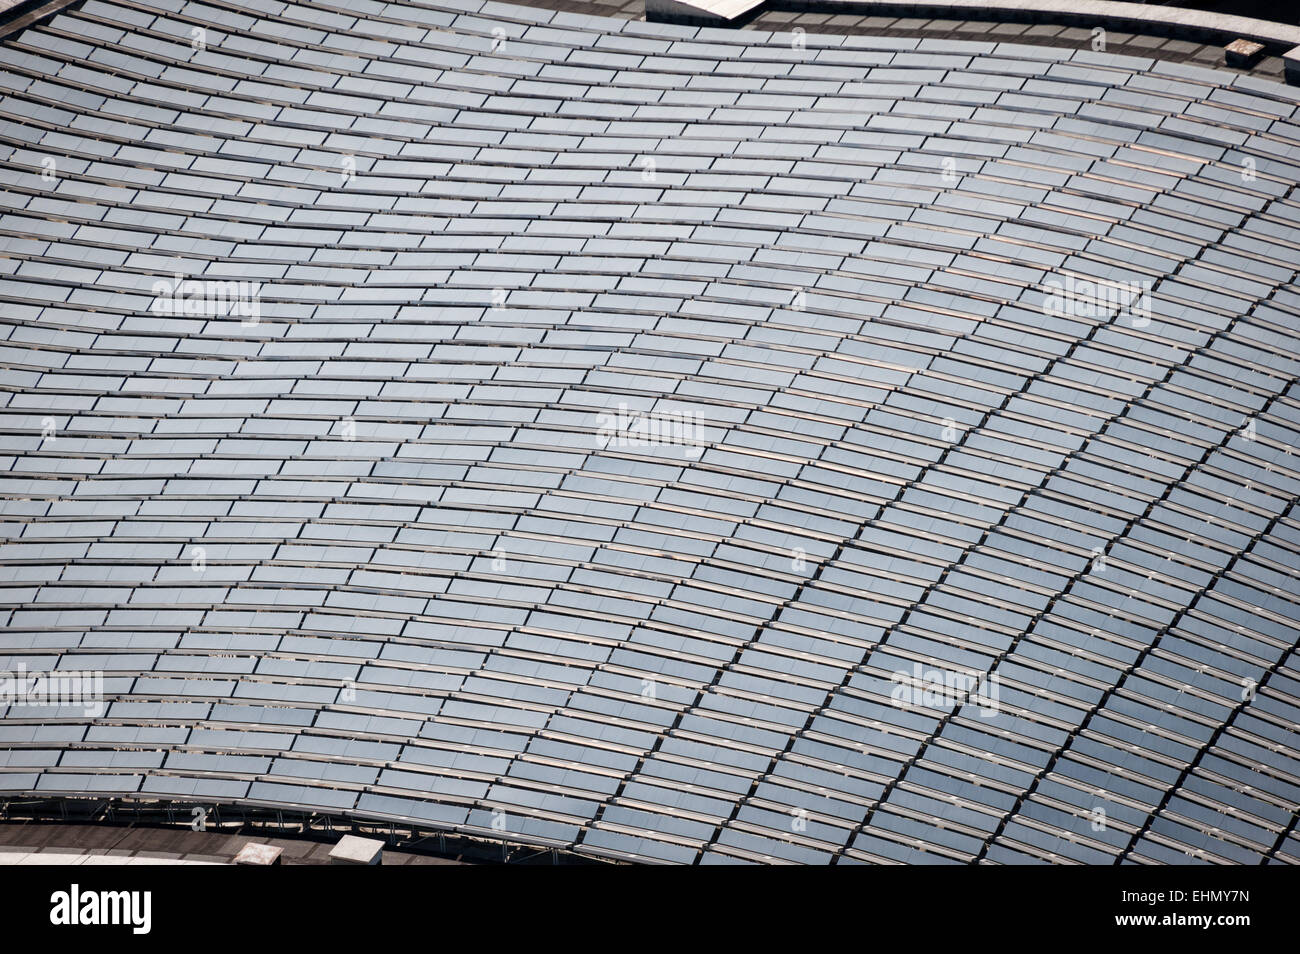 Los paneles solares fotovoltaicos en el techo de la Sala de Audiencias Pablo VI, Roma, Lazio, Italia. Foto de stock